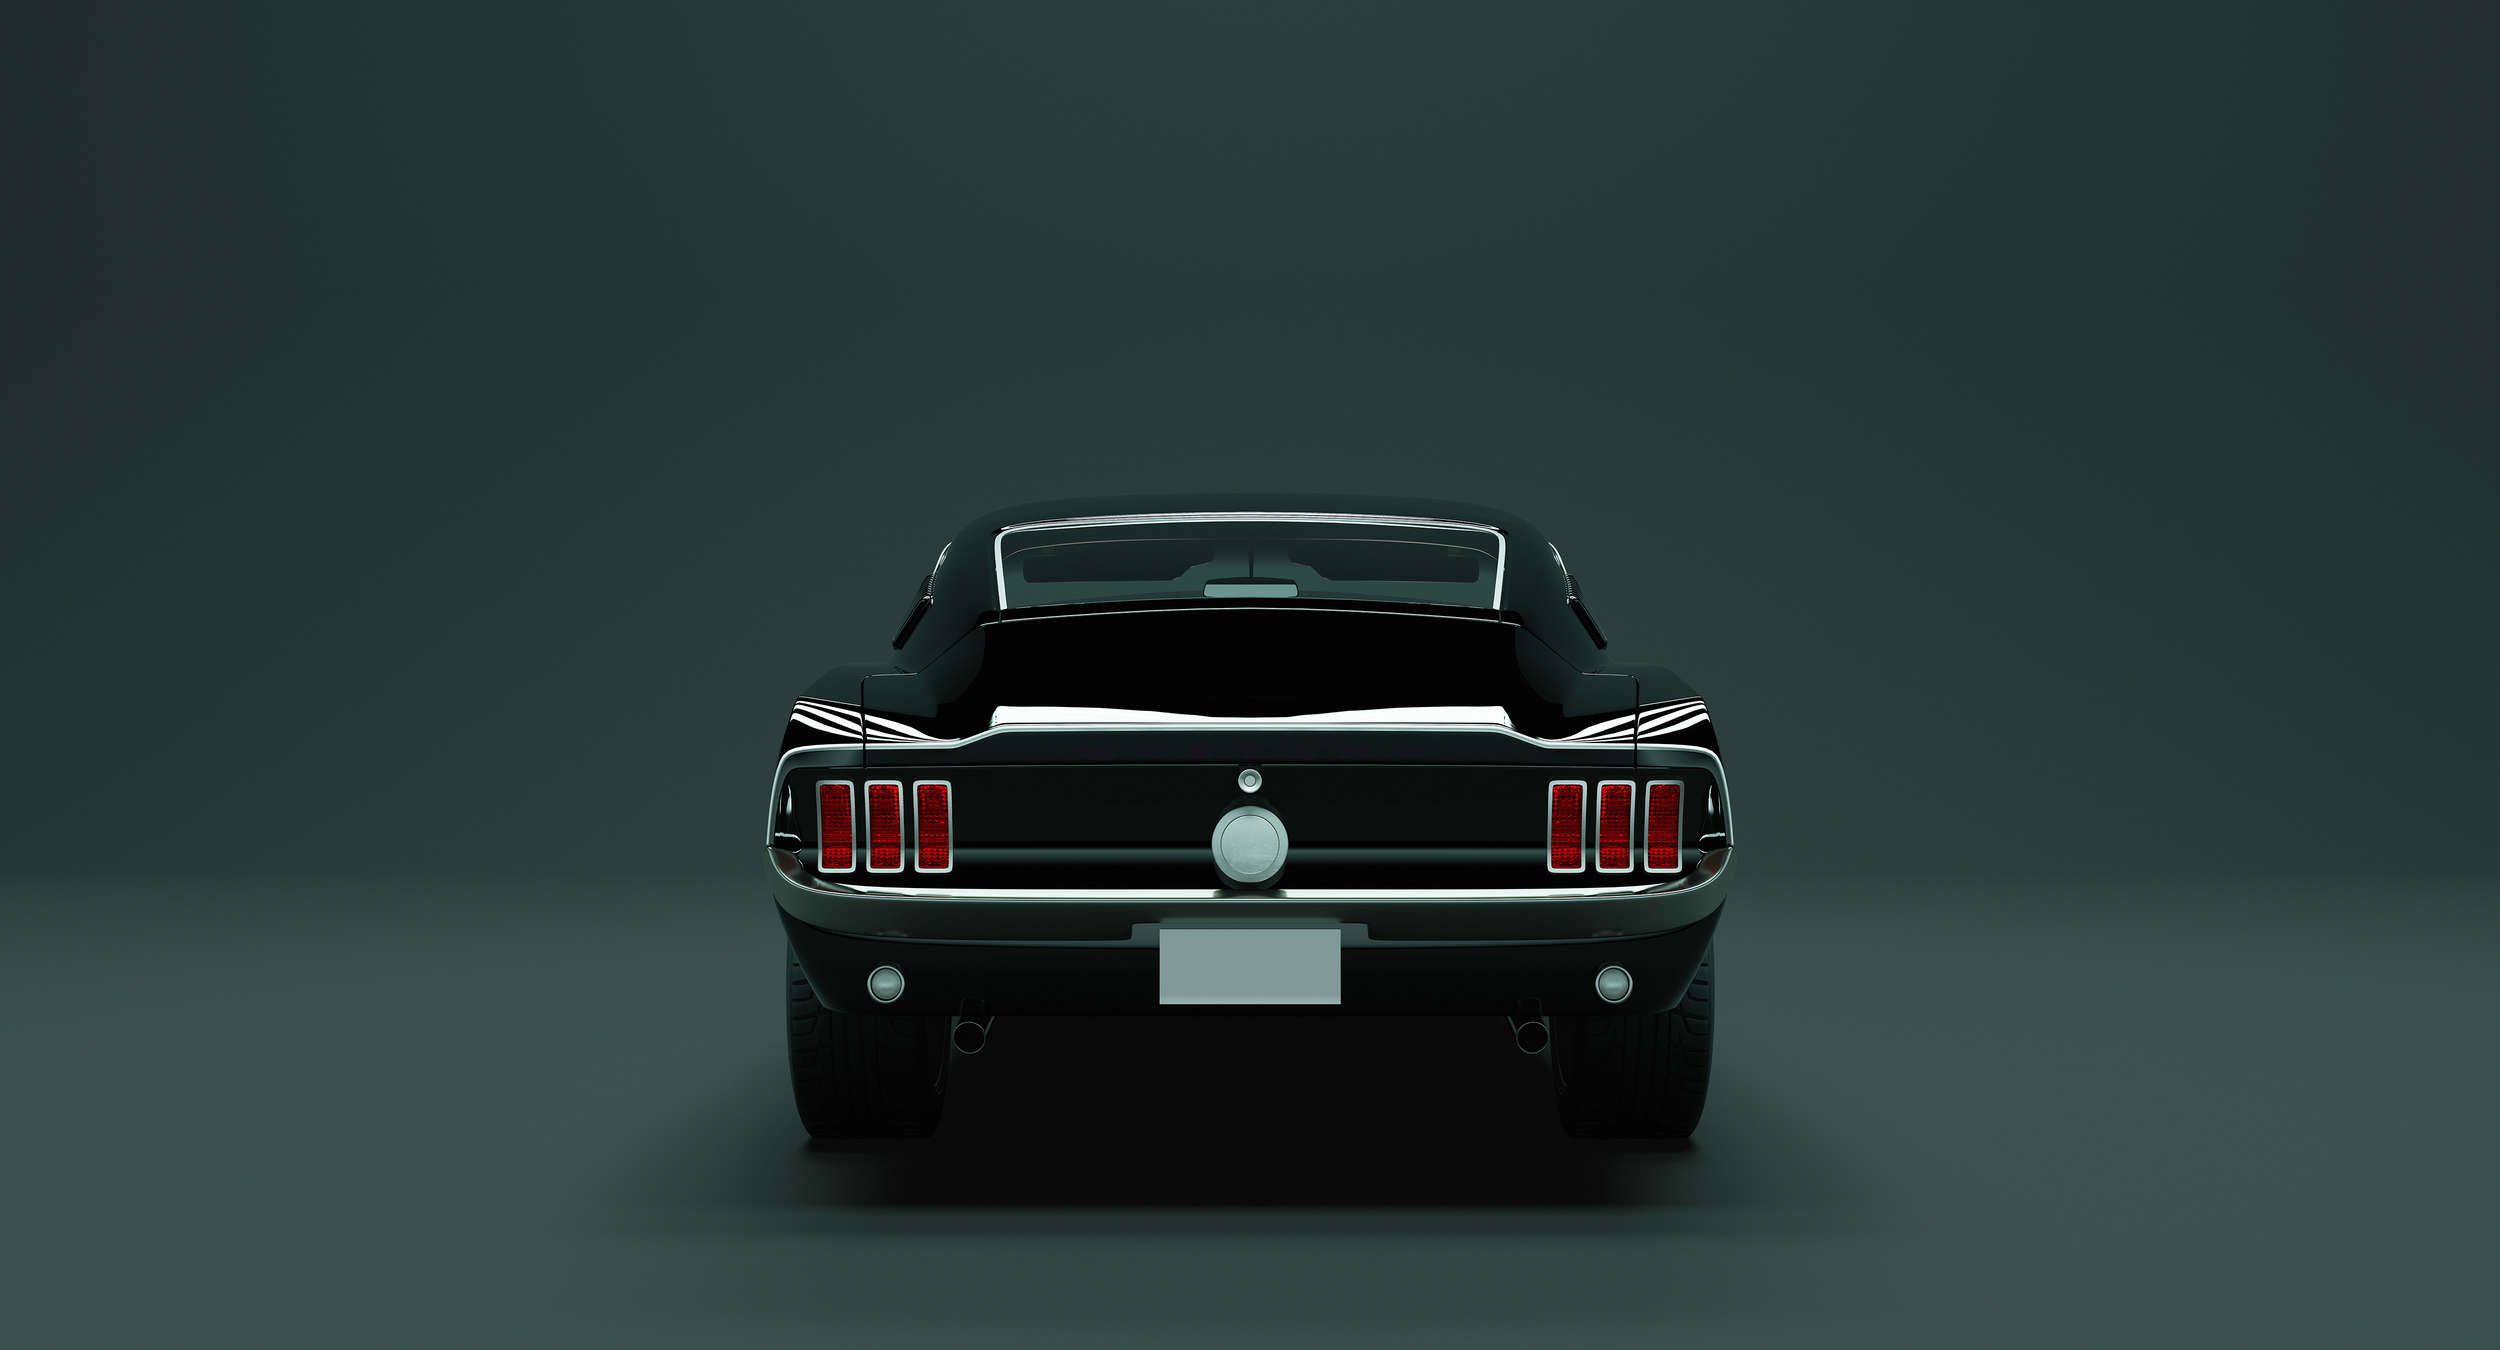             Mustang 3 - Carta da parati American Muscle Car - Vello liscio blu, nero e perlato
        